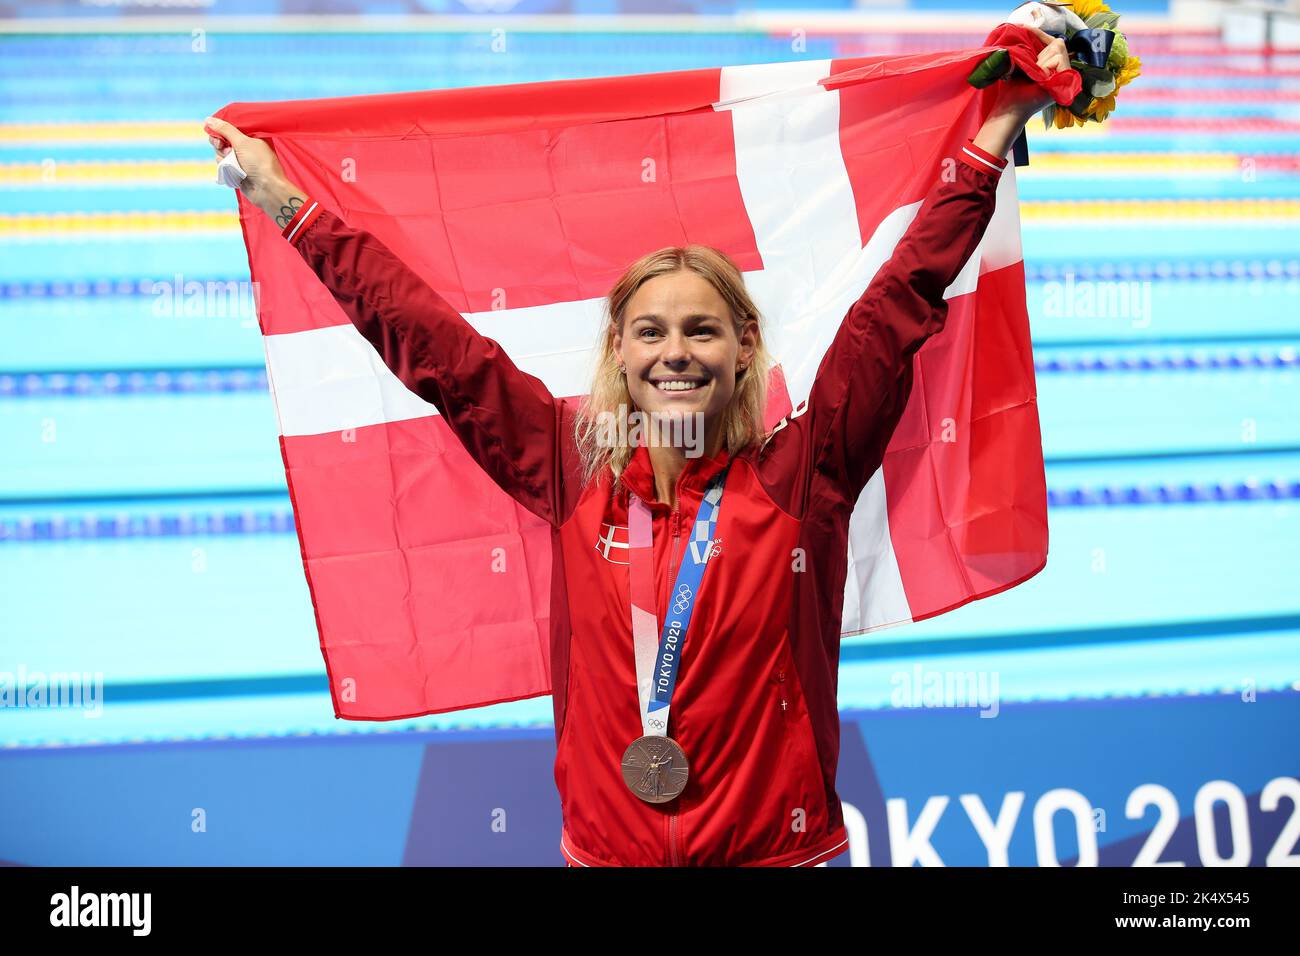 1st AGOSTO 2021 - TOKYO, GIAPPONE: Pernille BLUME di Danimarca vince la medaglia di bronzo nella finale di Freestyle 50m delle Donne in piscina ai Giochi Olimpici di Tokyo 2020 (Foto: Mickael Chavet/RX) Foto Stock